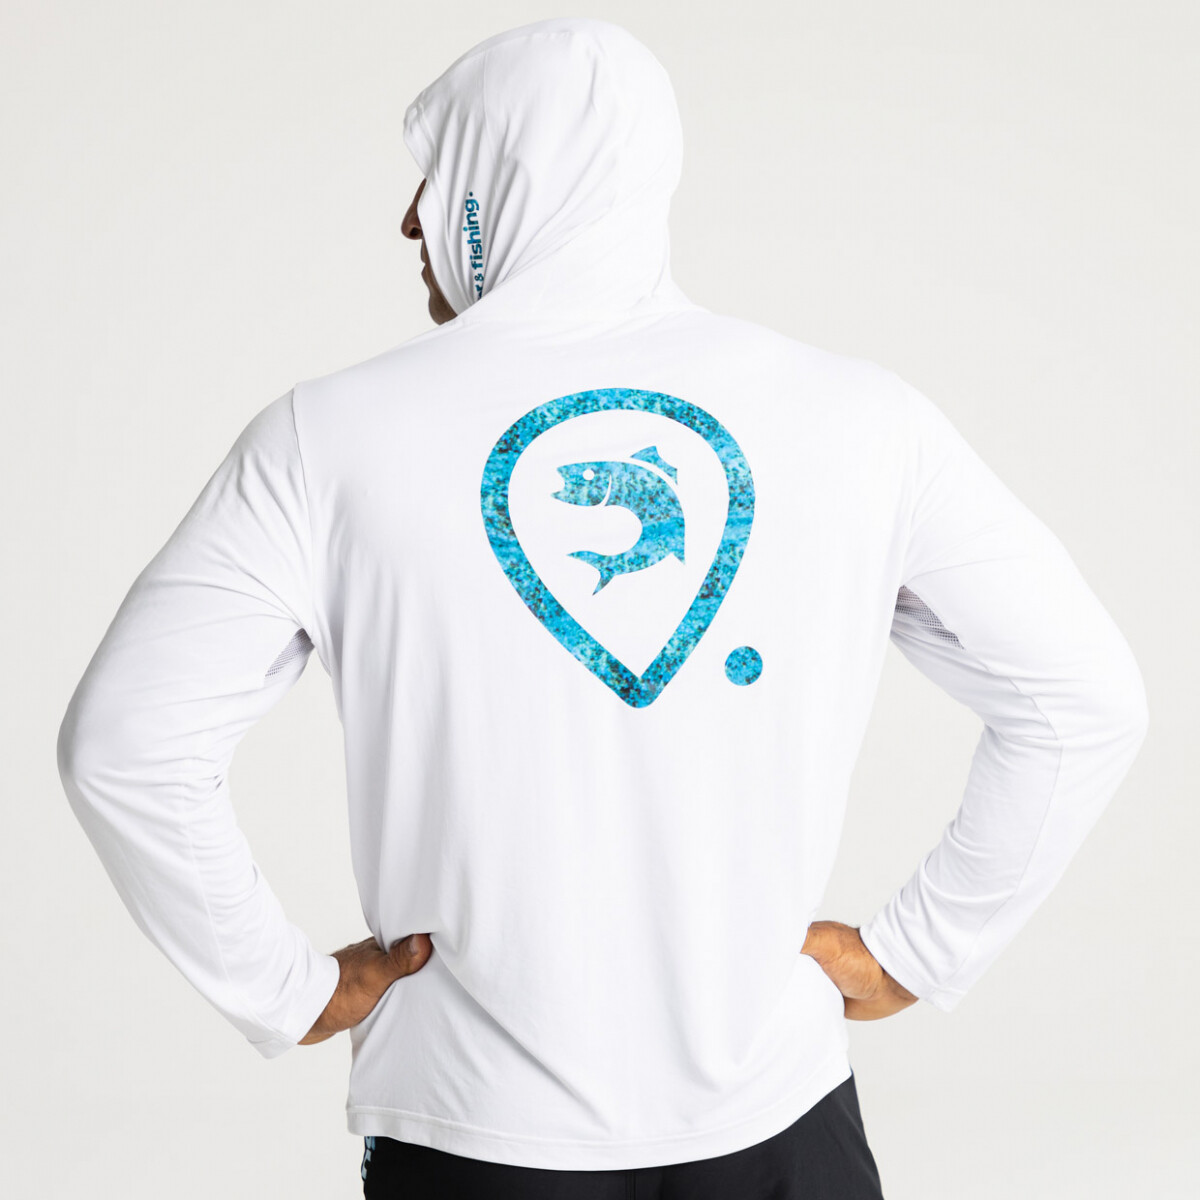 Adventer & fishing Funkční hoodie UV tričko White & Bluefin